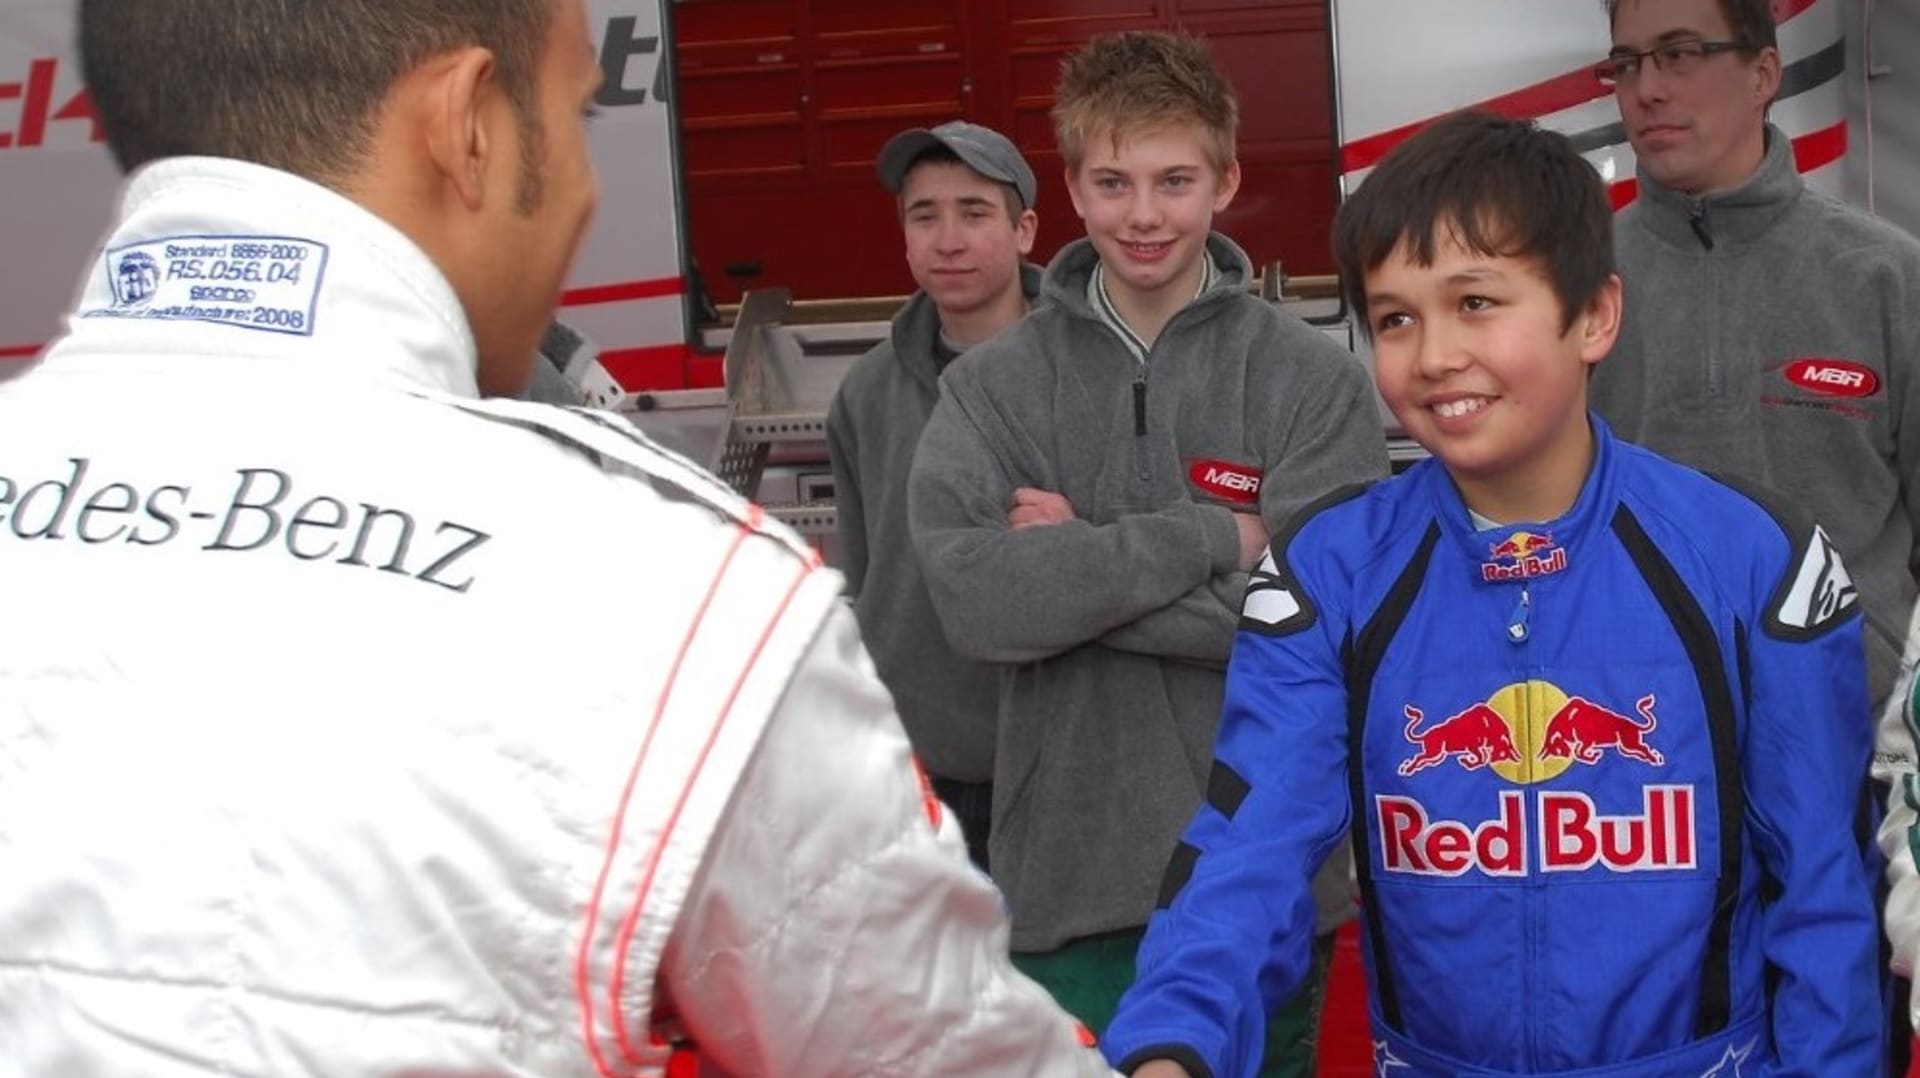 Takto vypadalo setkání Lewise Hamiltona (vlevo) a Alexandera Albona v roce 2009. Poslední víkend společně pózovali na stupních vítězů po Velké ceně Toskánska.